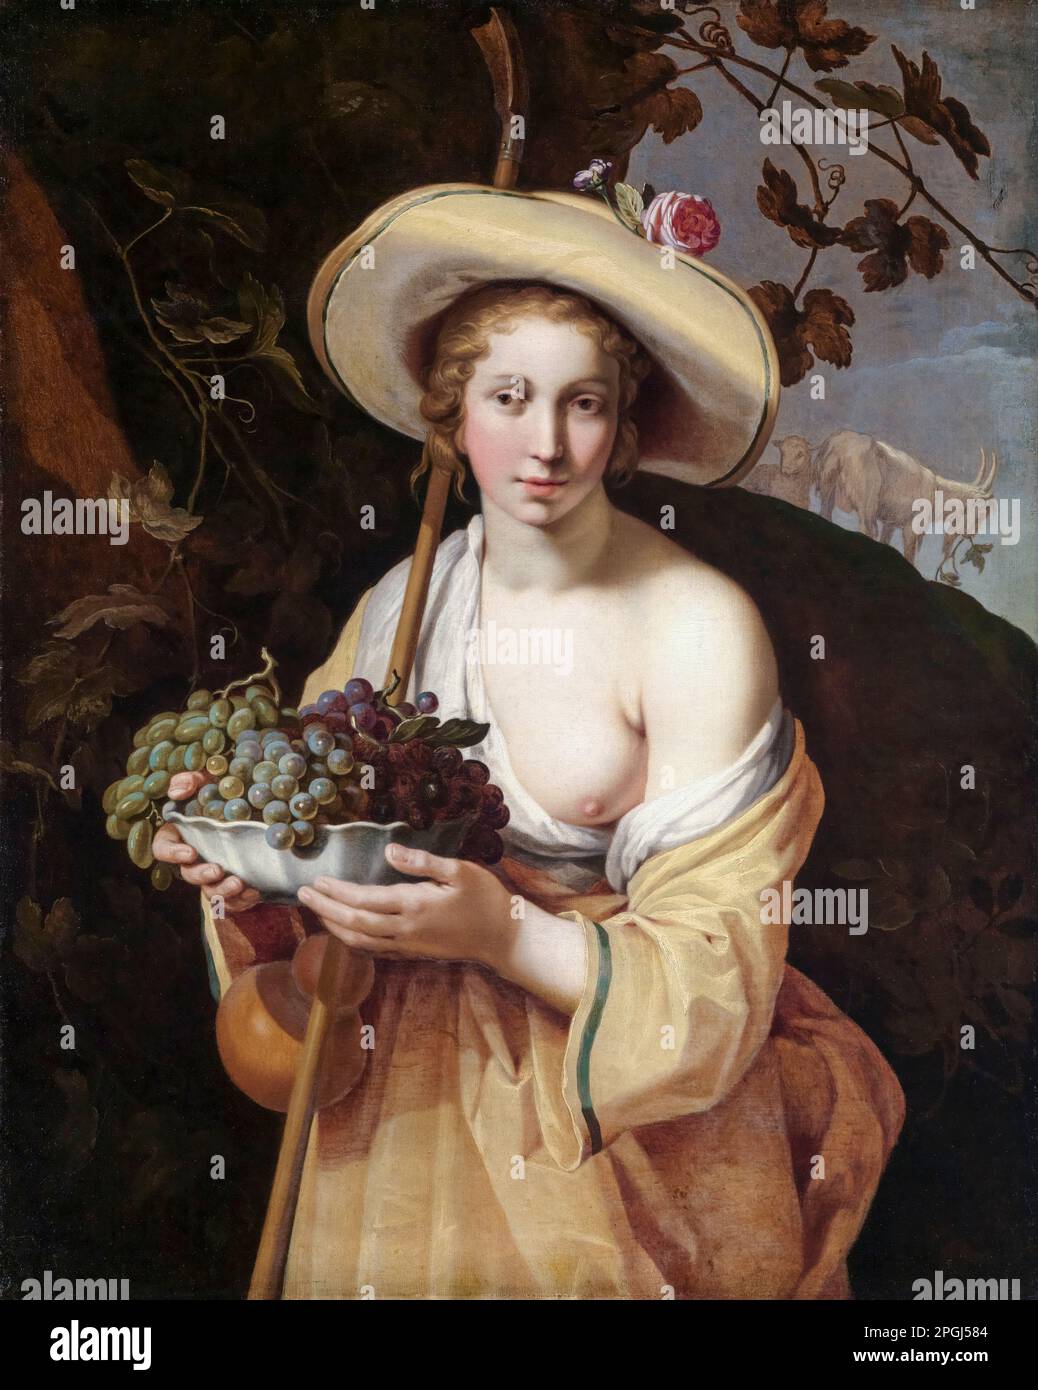 Schäferin mit Grape Bowl, Ölgemälde auf Leinwand von Abraham Bloemaert, 1628 Stockfoto